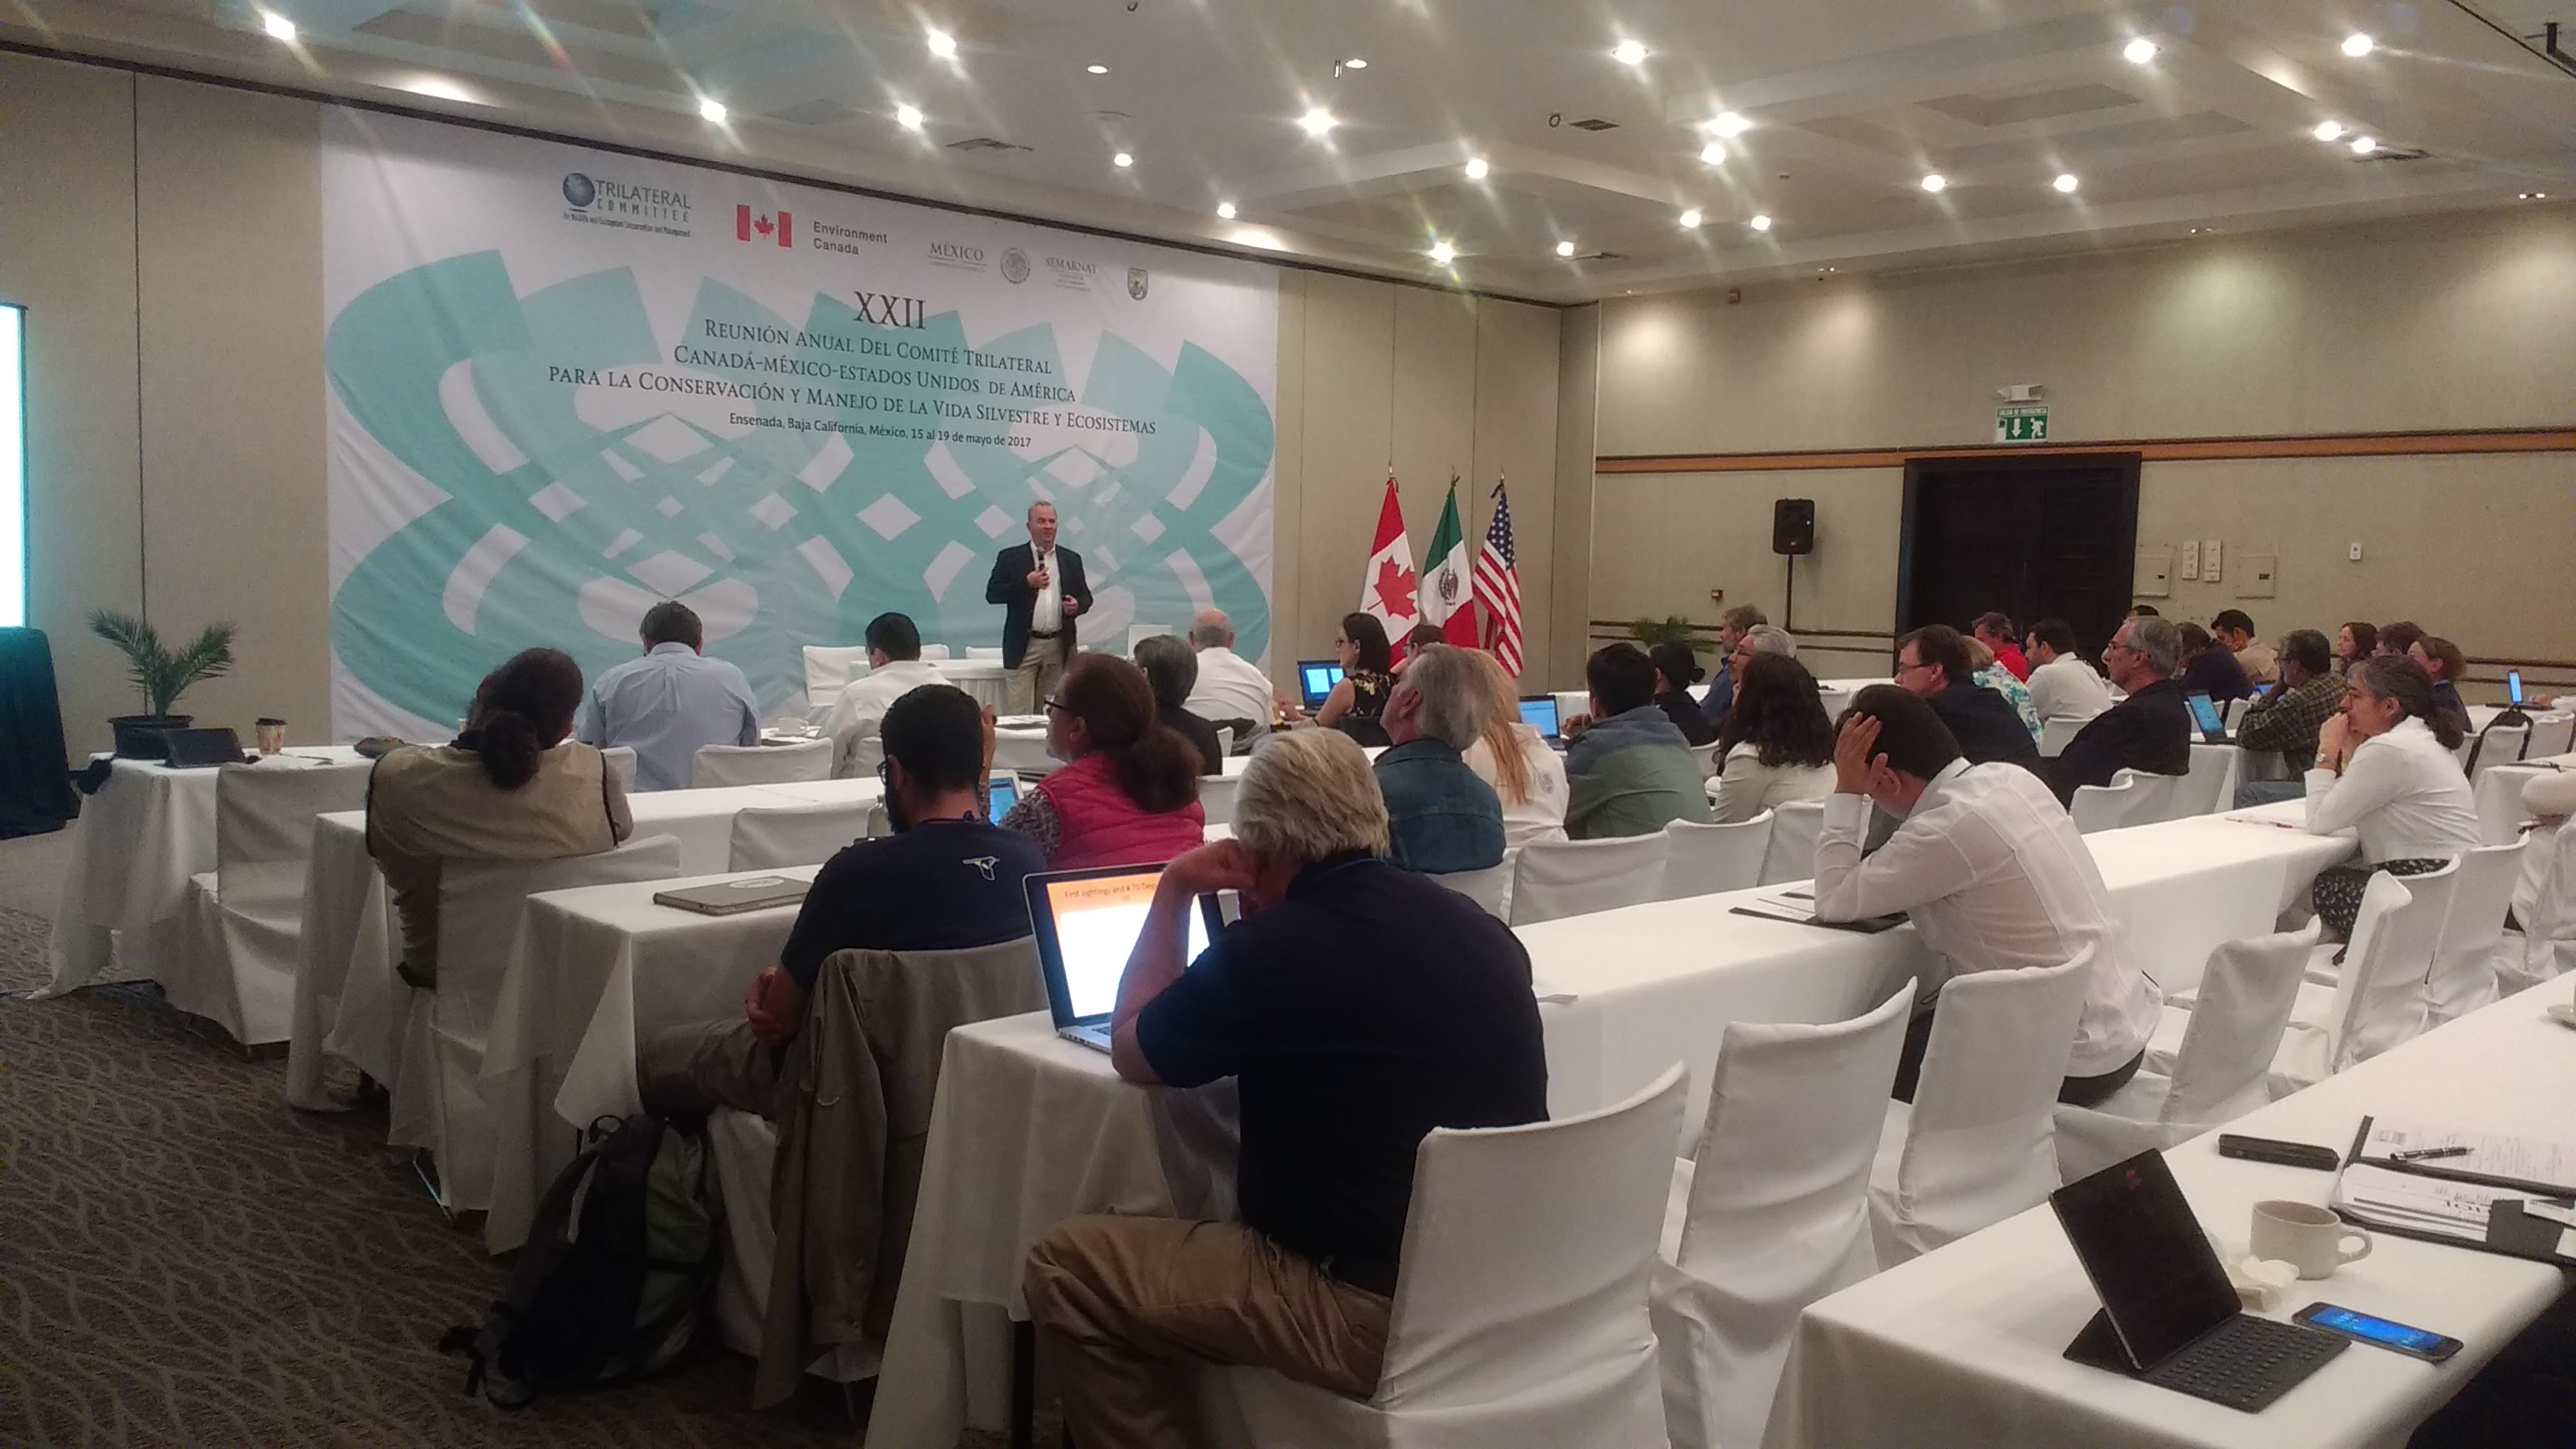 La XXII reunión anual del Comité Trilateral México-Canadá-EUA para la conservación y manejo de la vida silvestre y los ecosistemas